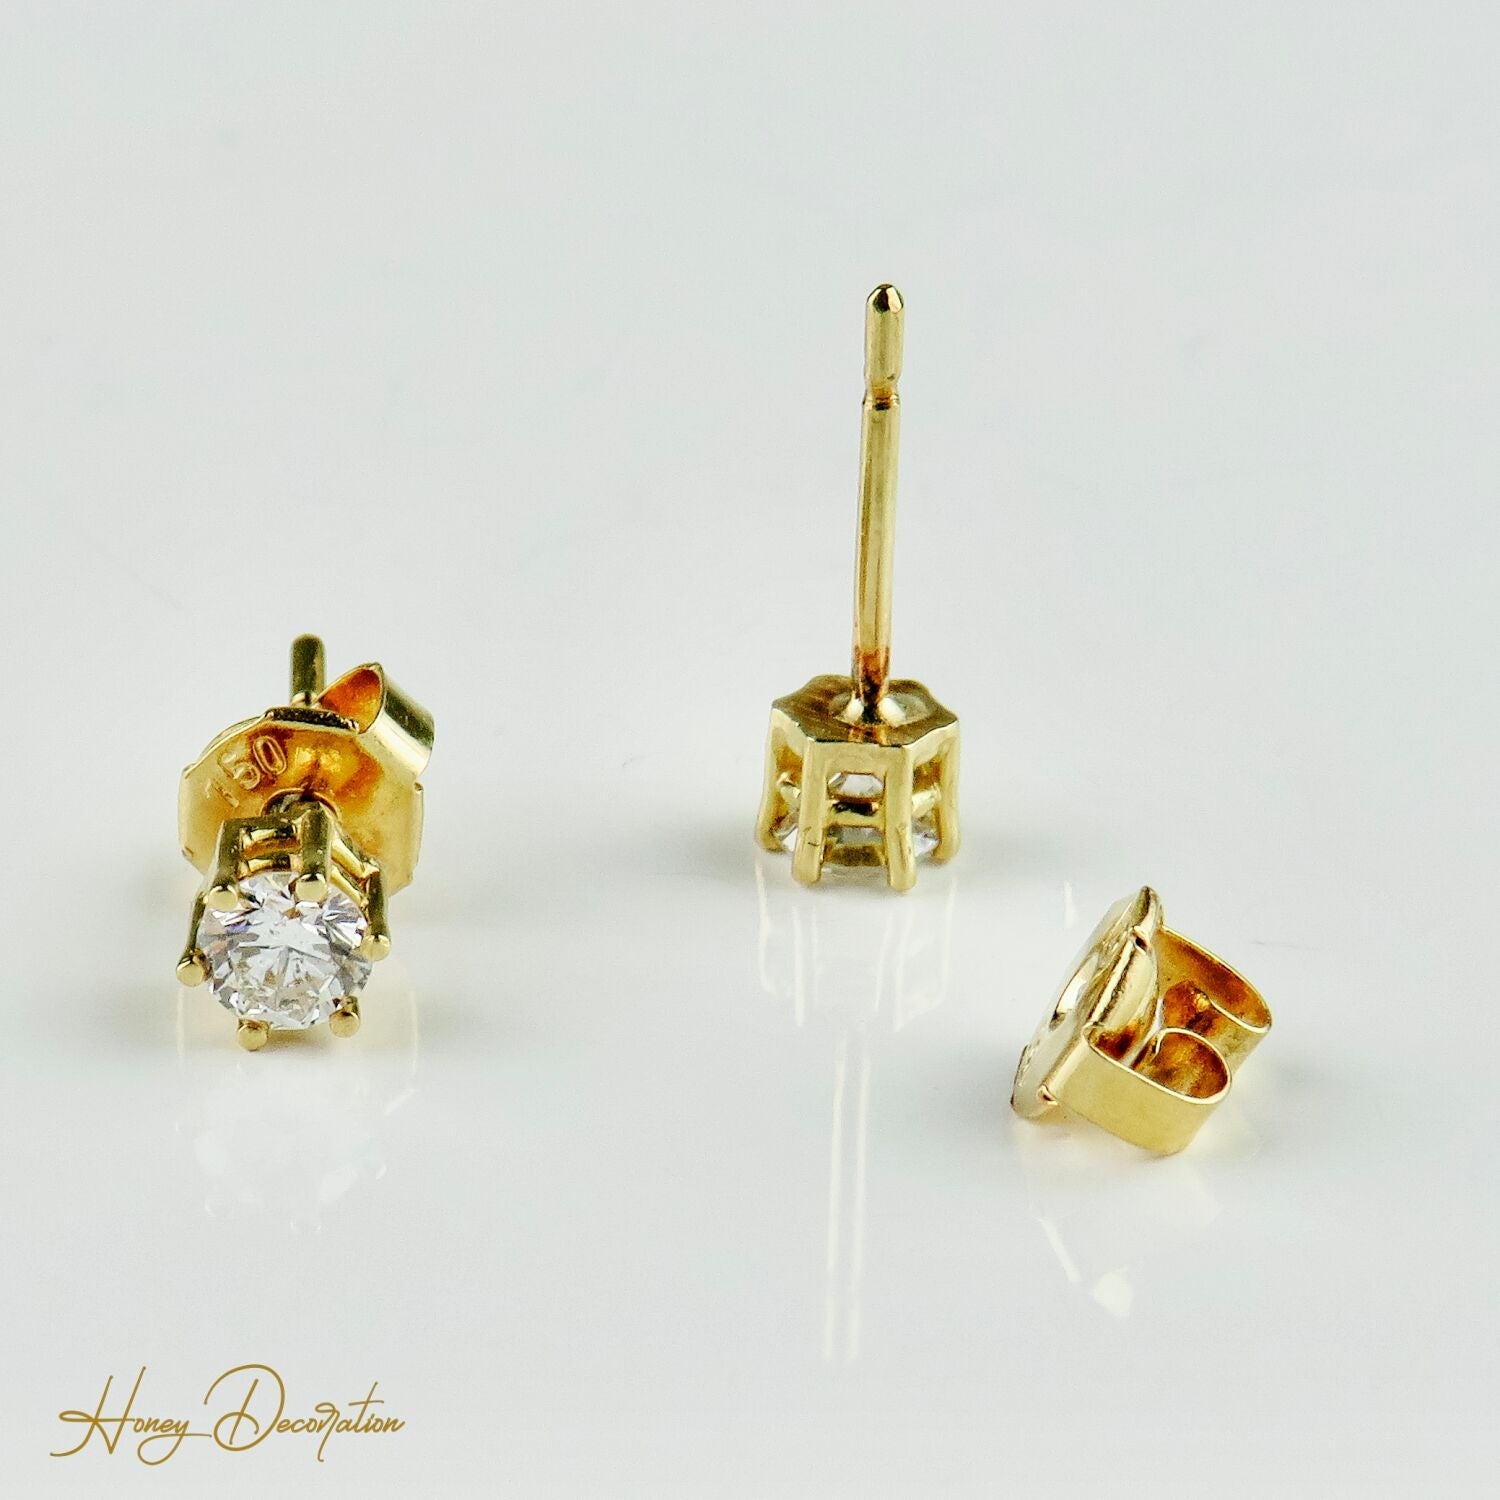 Traumhafte Gold-Ohrstecker mit Brillantsolitär - Honey Decoration